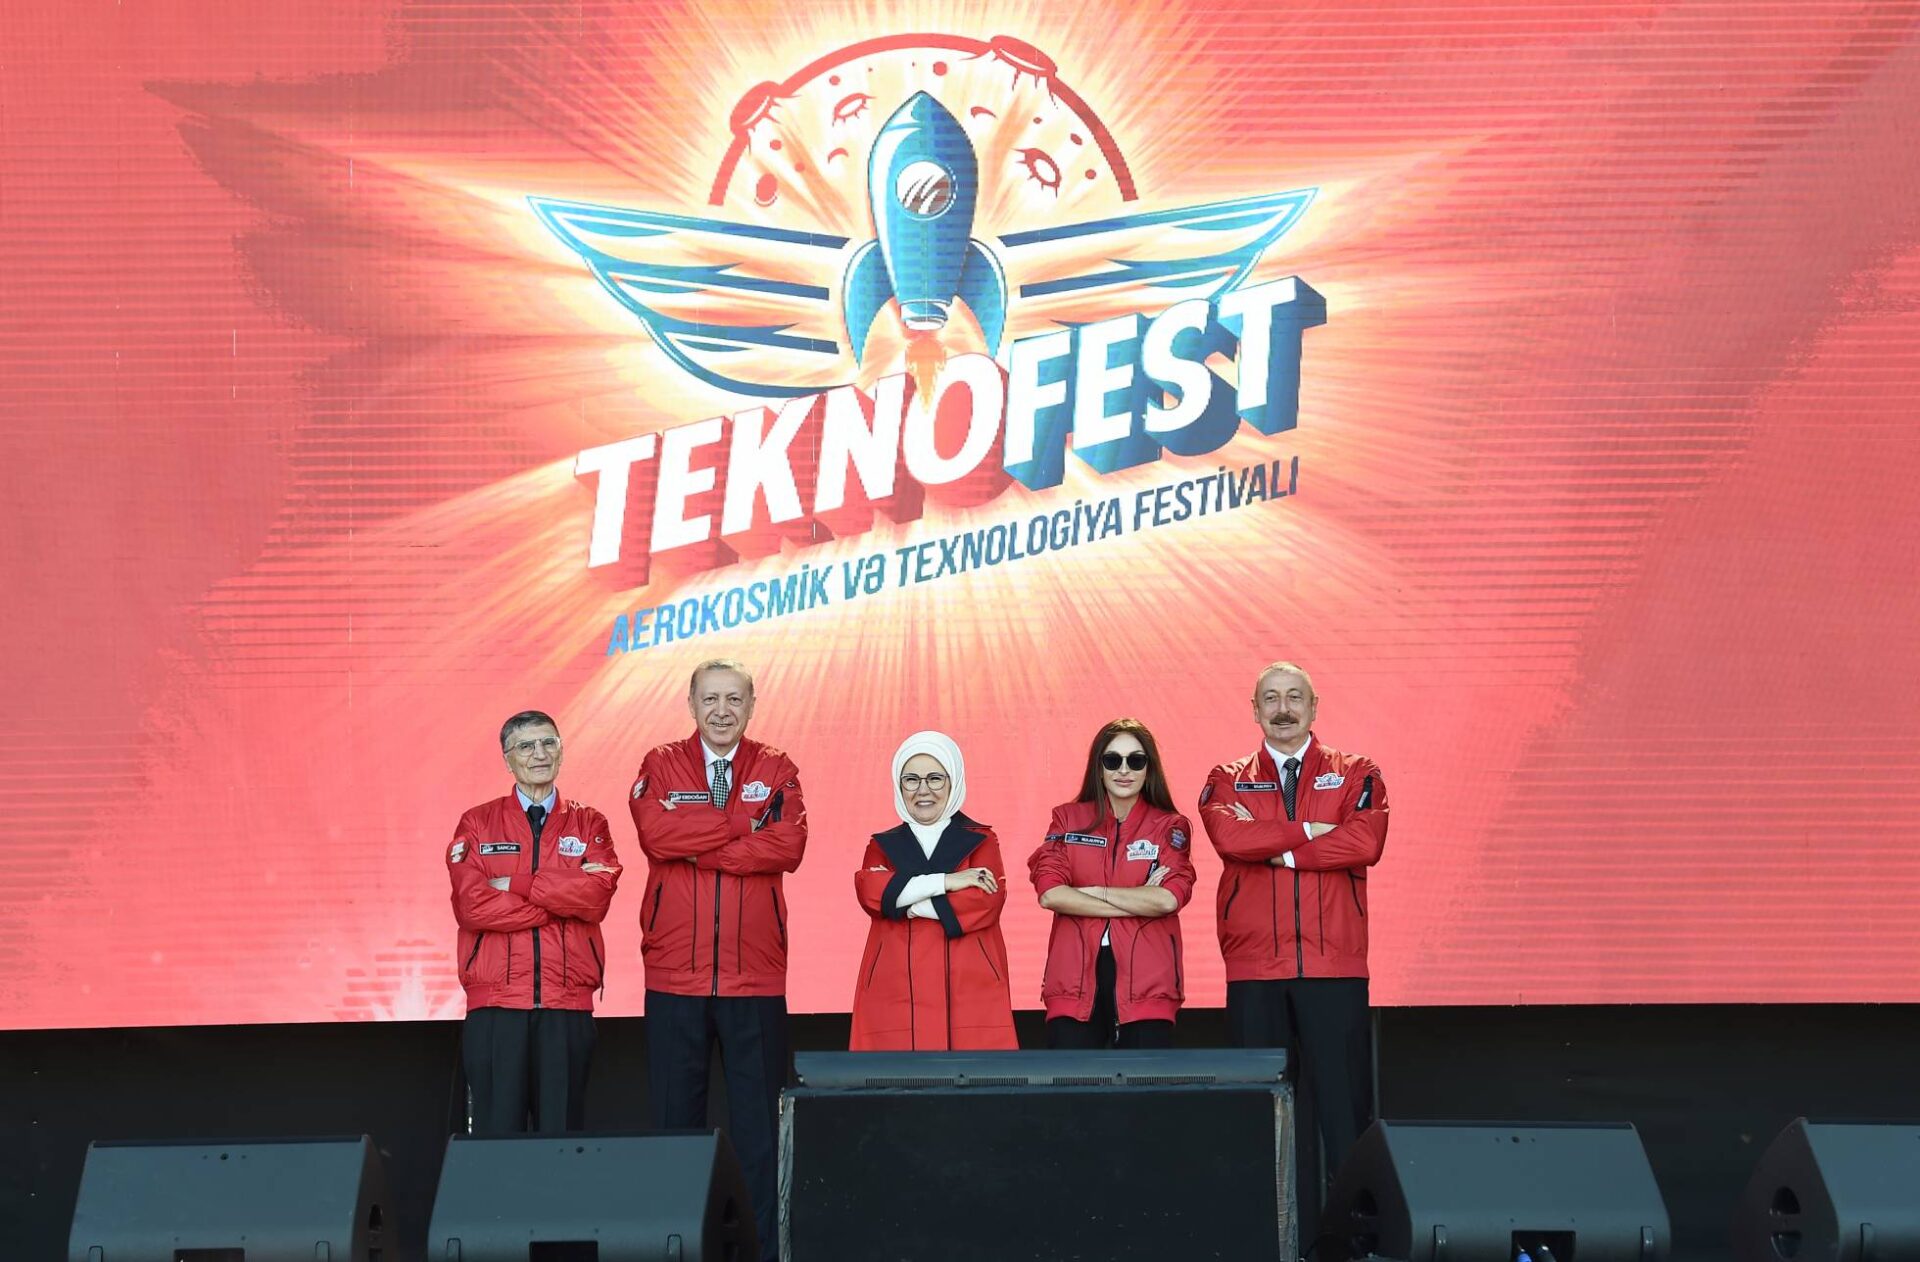 Ильхам Алиев и Реджеп Тайип Эрдоган приняли участие в азербайджанском фестивале TEKNOFEST в Баку